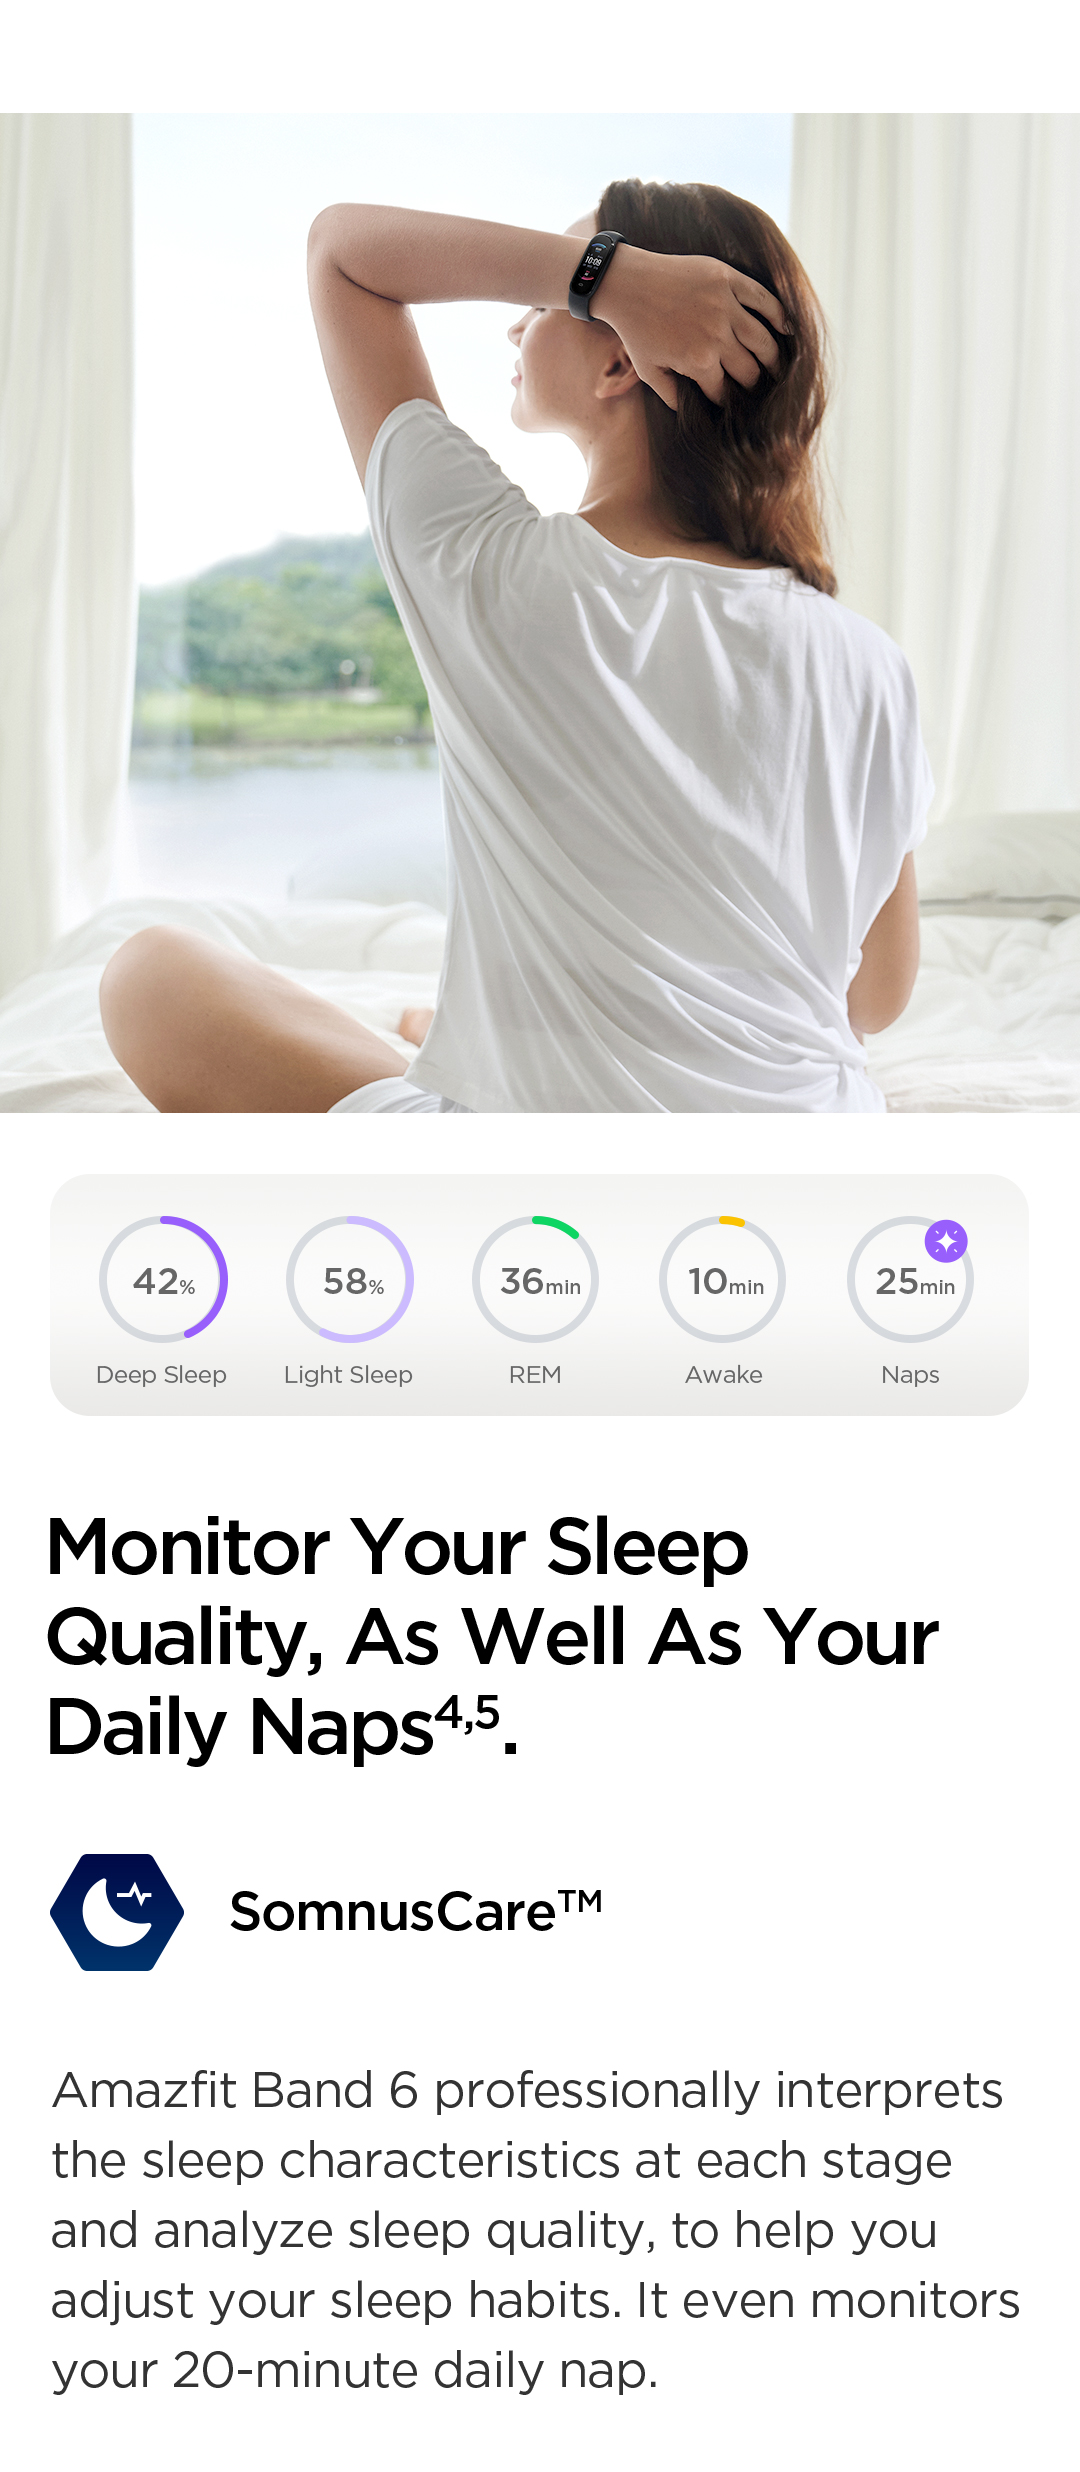 Amazfit Band 5 Sleep Quality Monitoring